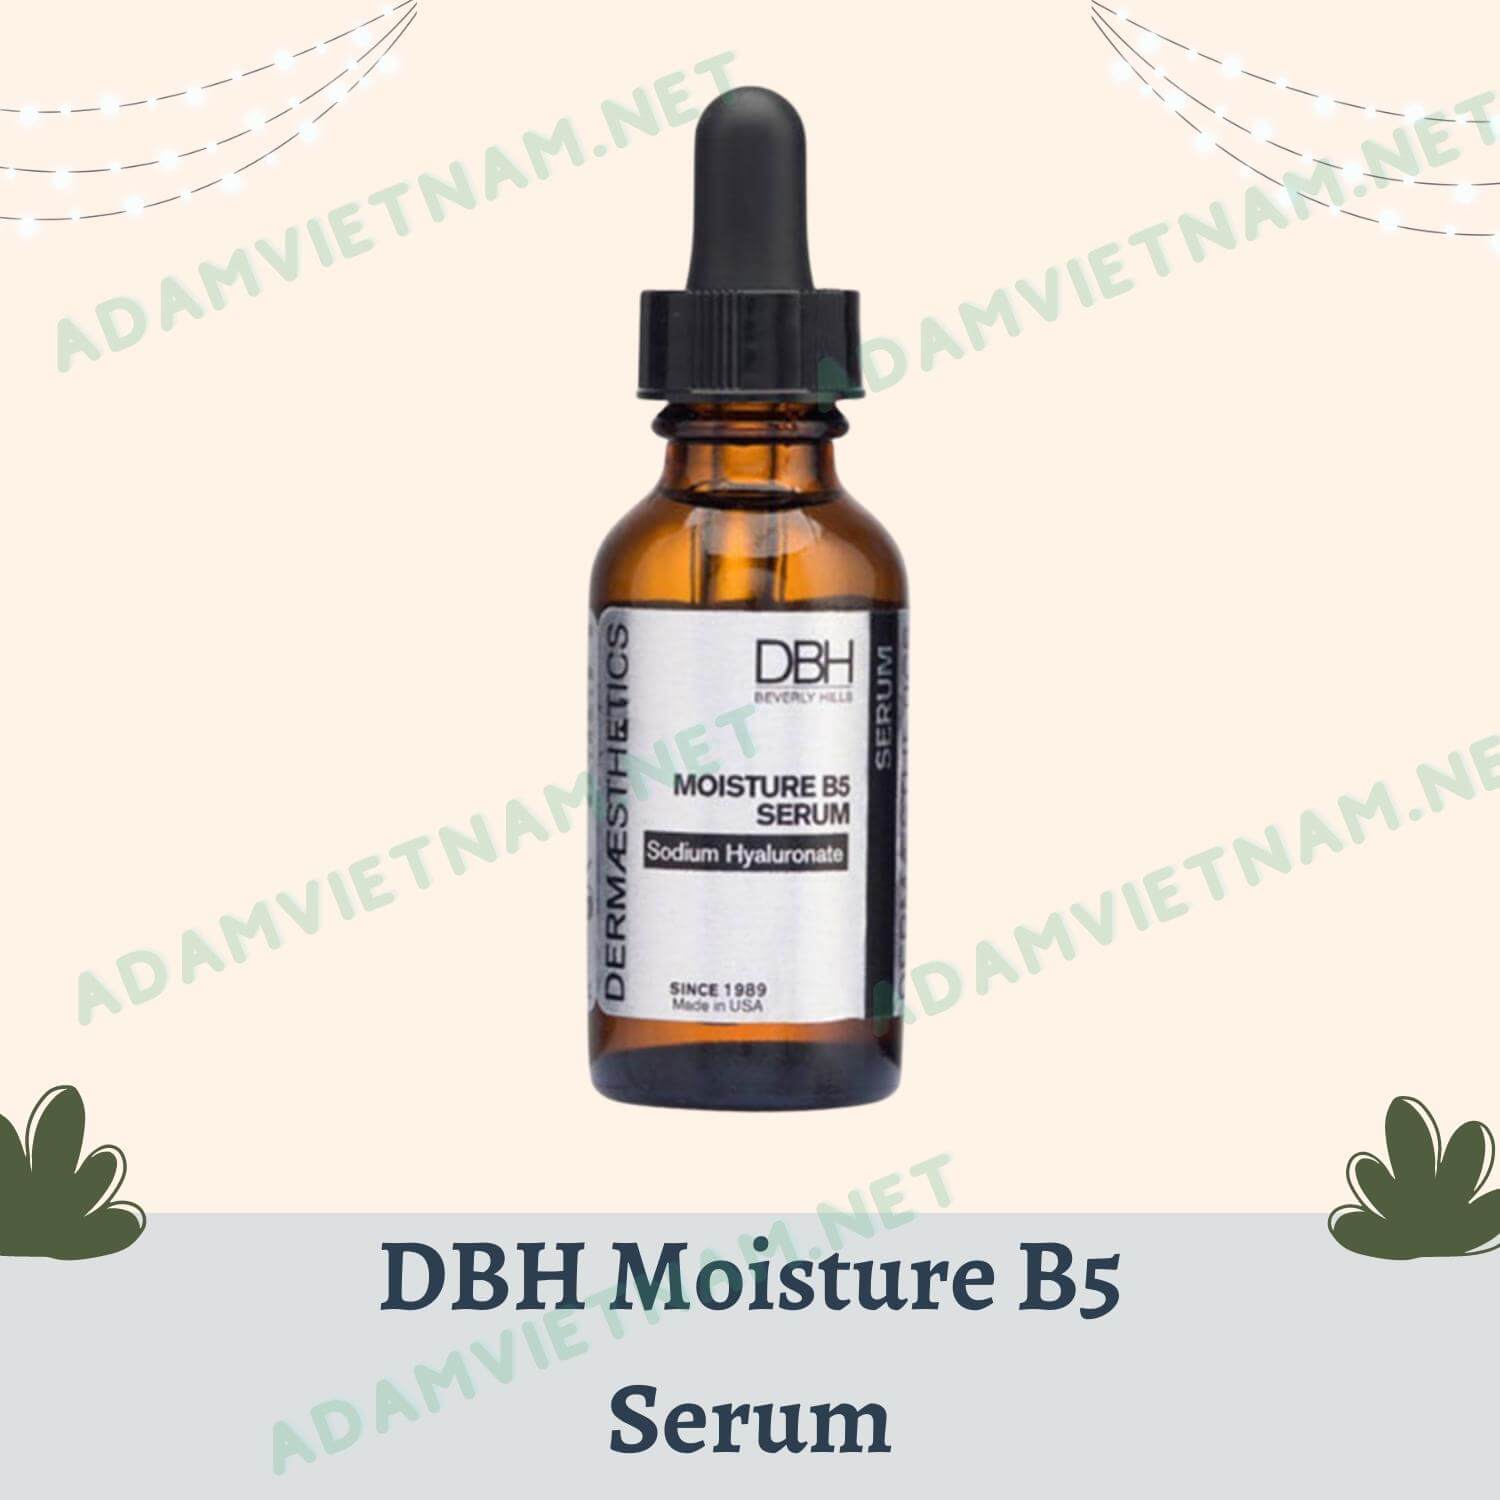 DBH Moisture B5 Serum